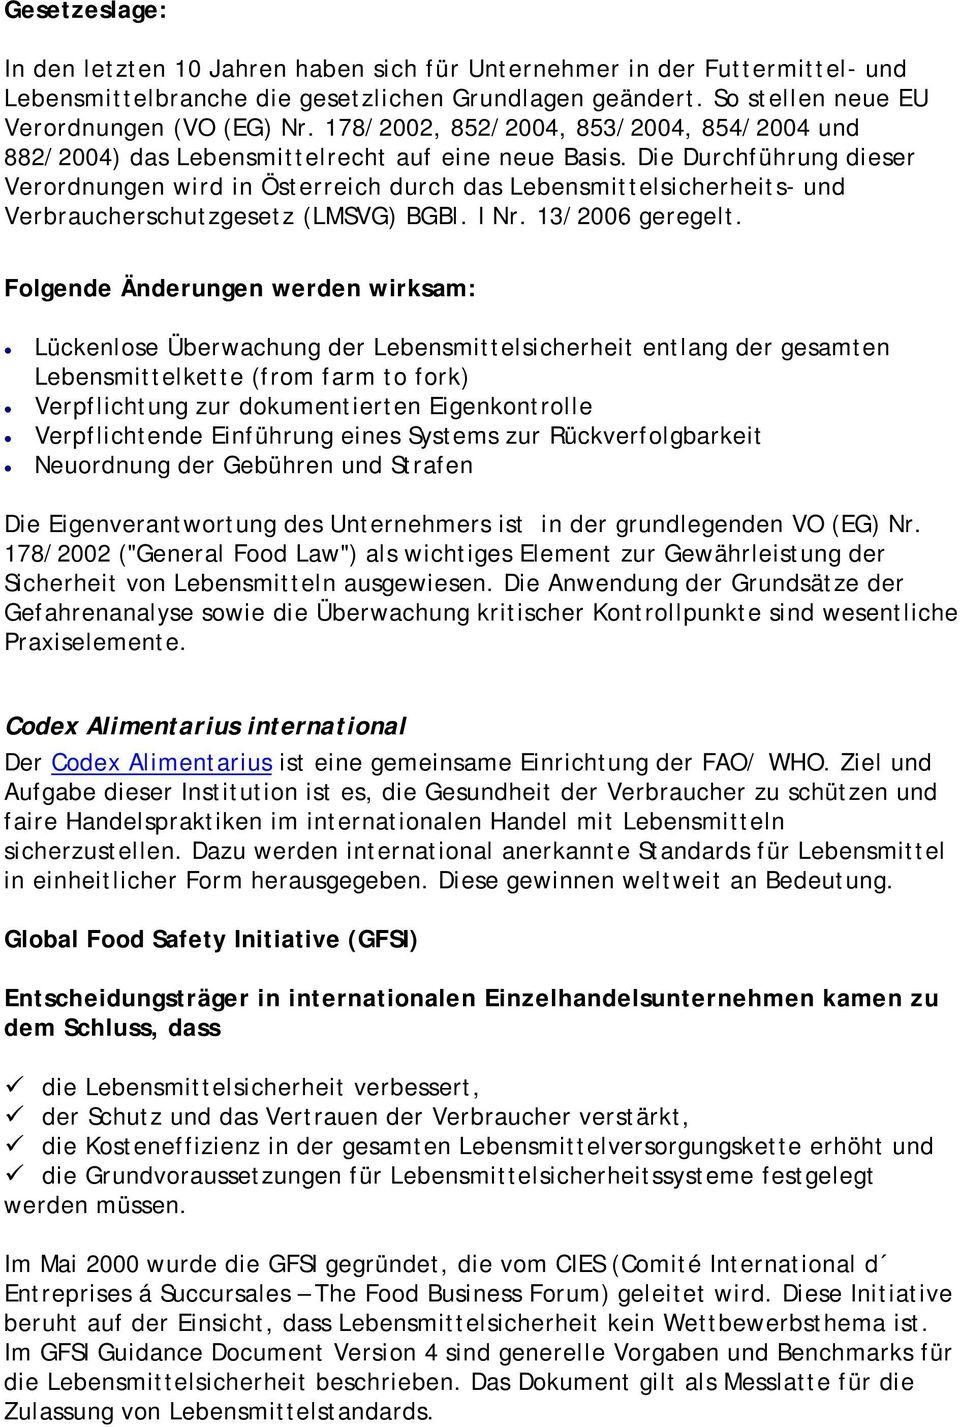 Die Durchführung dieser Verordnungen wird in Österreich durch das Lebensmittelsicherheits- und Verbraucherschutzgesetz (LMSVG) BGBl. I Nr. 13/2006 geregelt.